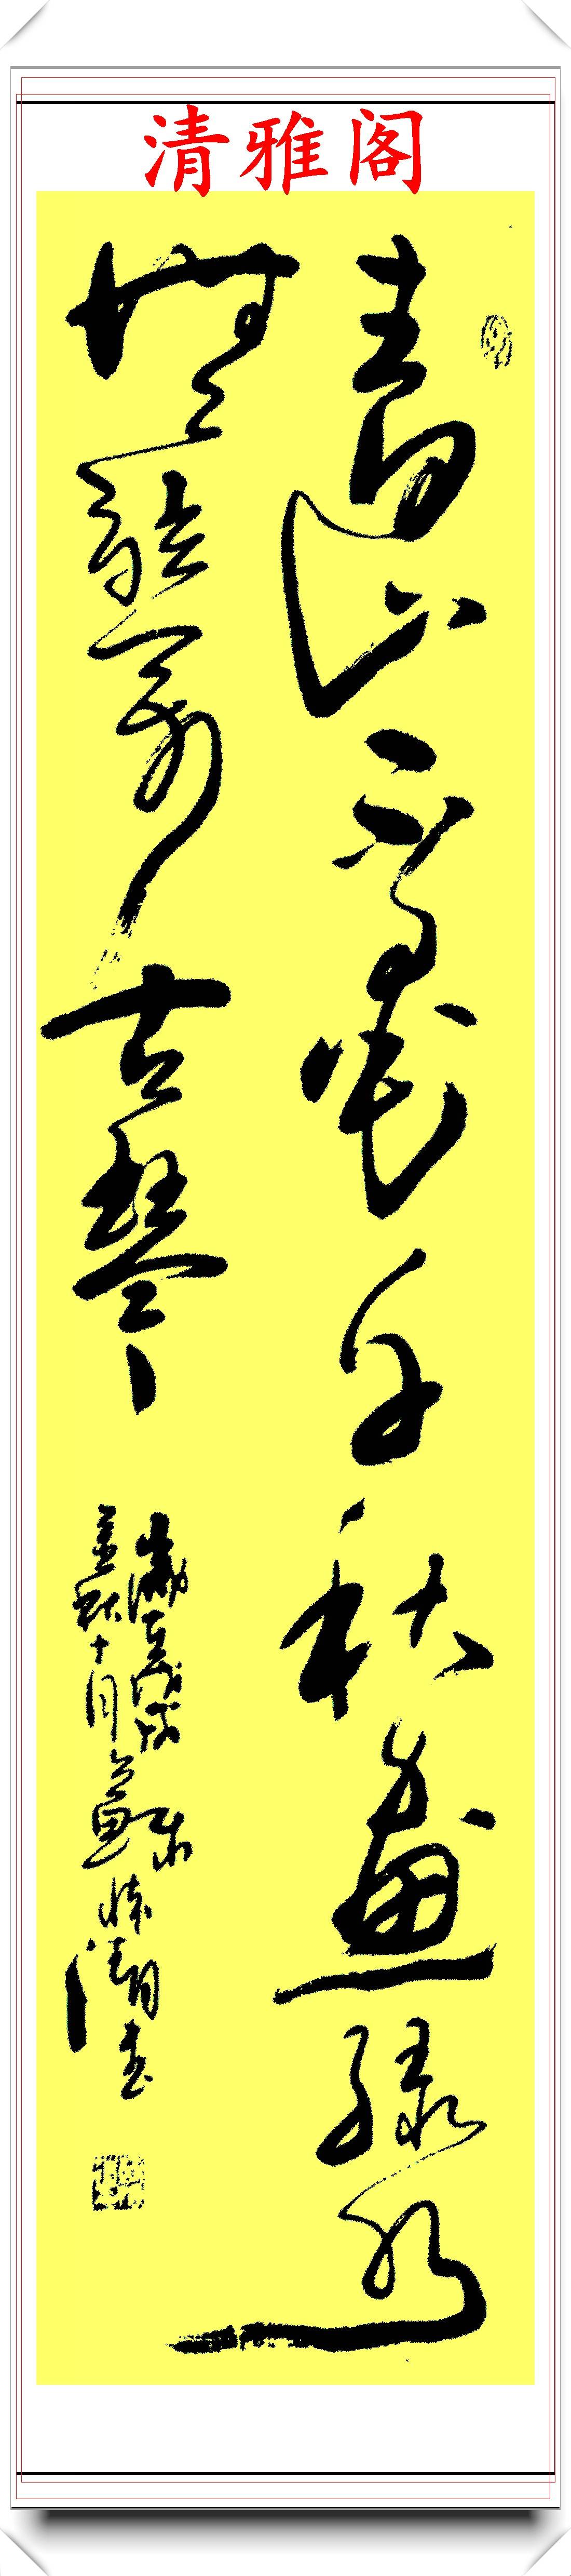 当代艺术大师苏怀清,16幅精选狂草书法欣赏,奇纵变化,超迈千古